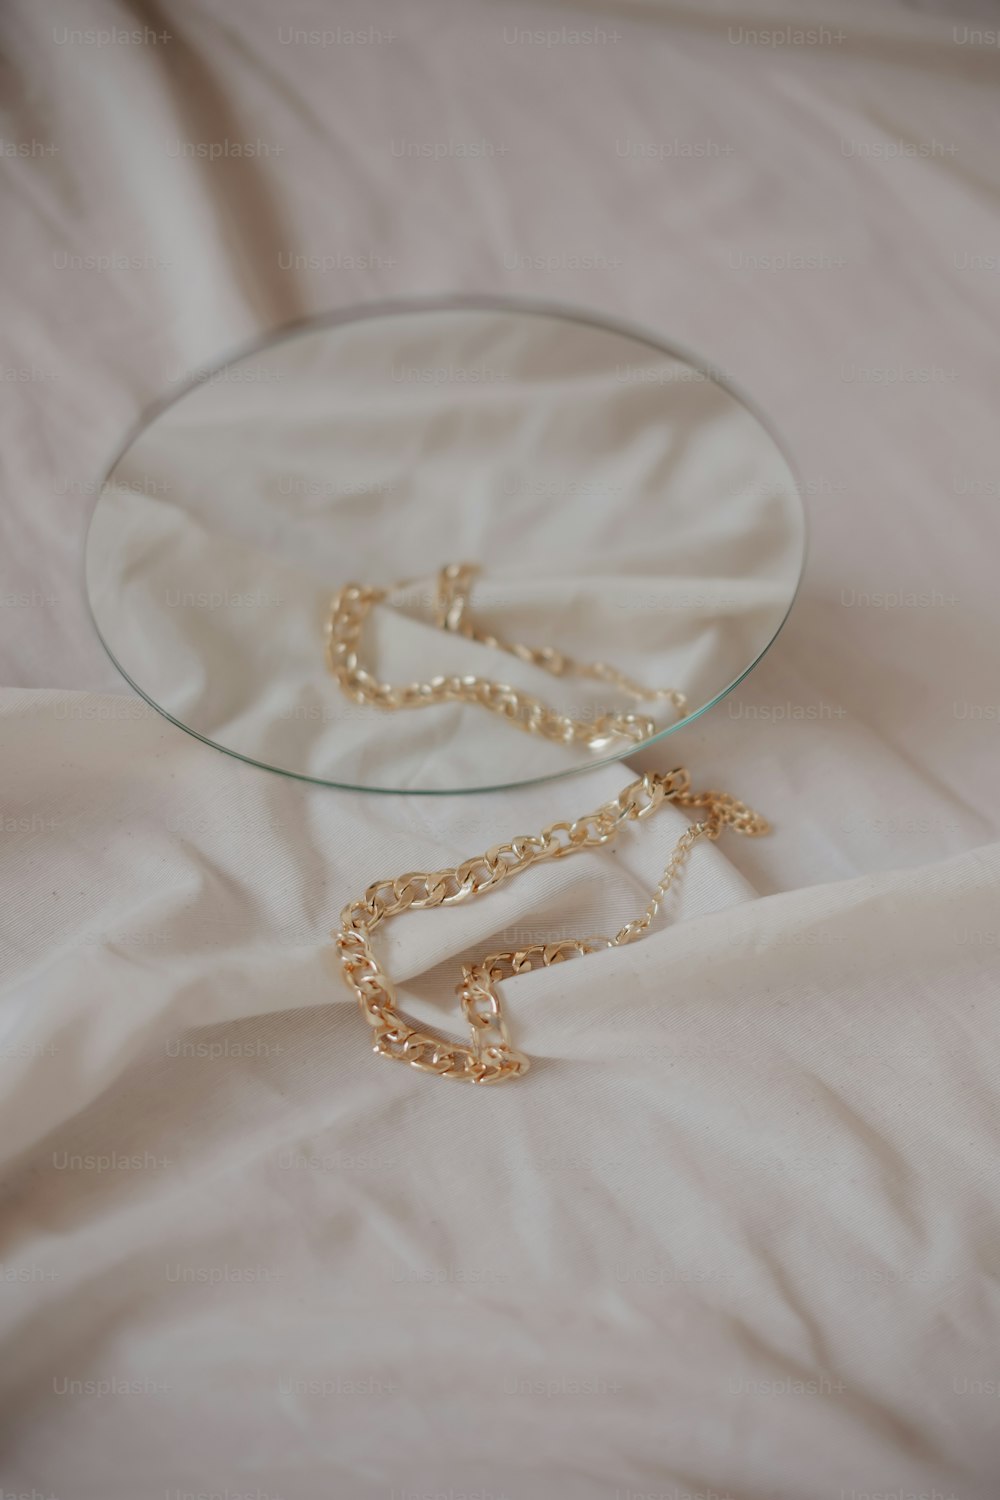 une plaque de verre avec une chaîne en or dessus